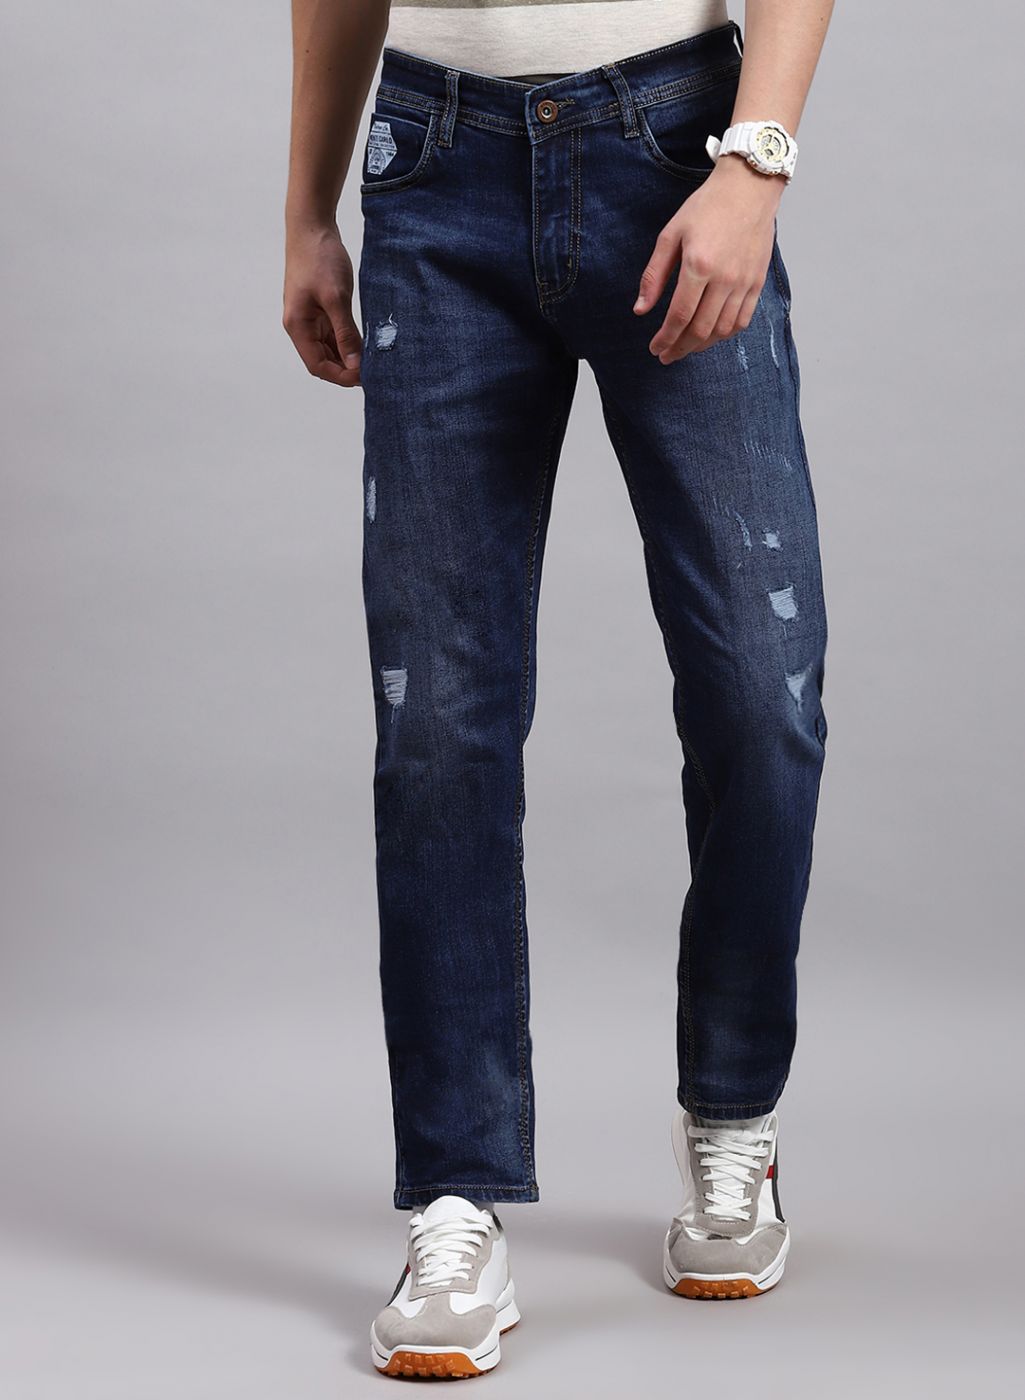 Selected Femme flared jeans in dark blue denim for women